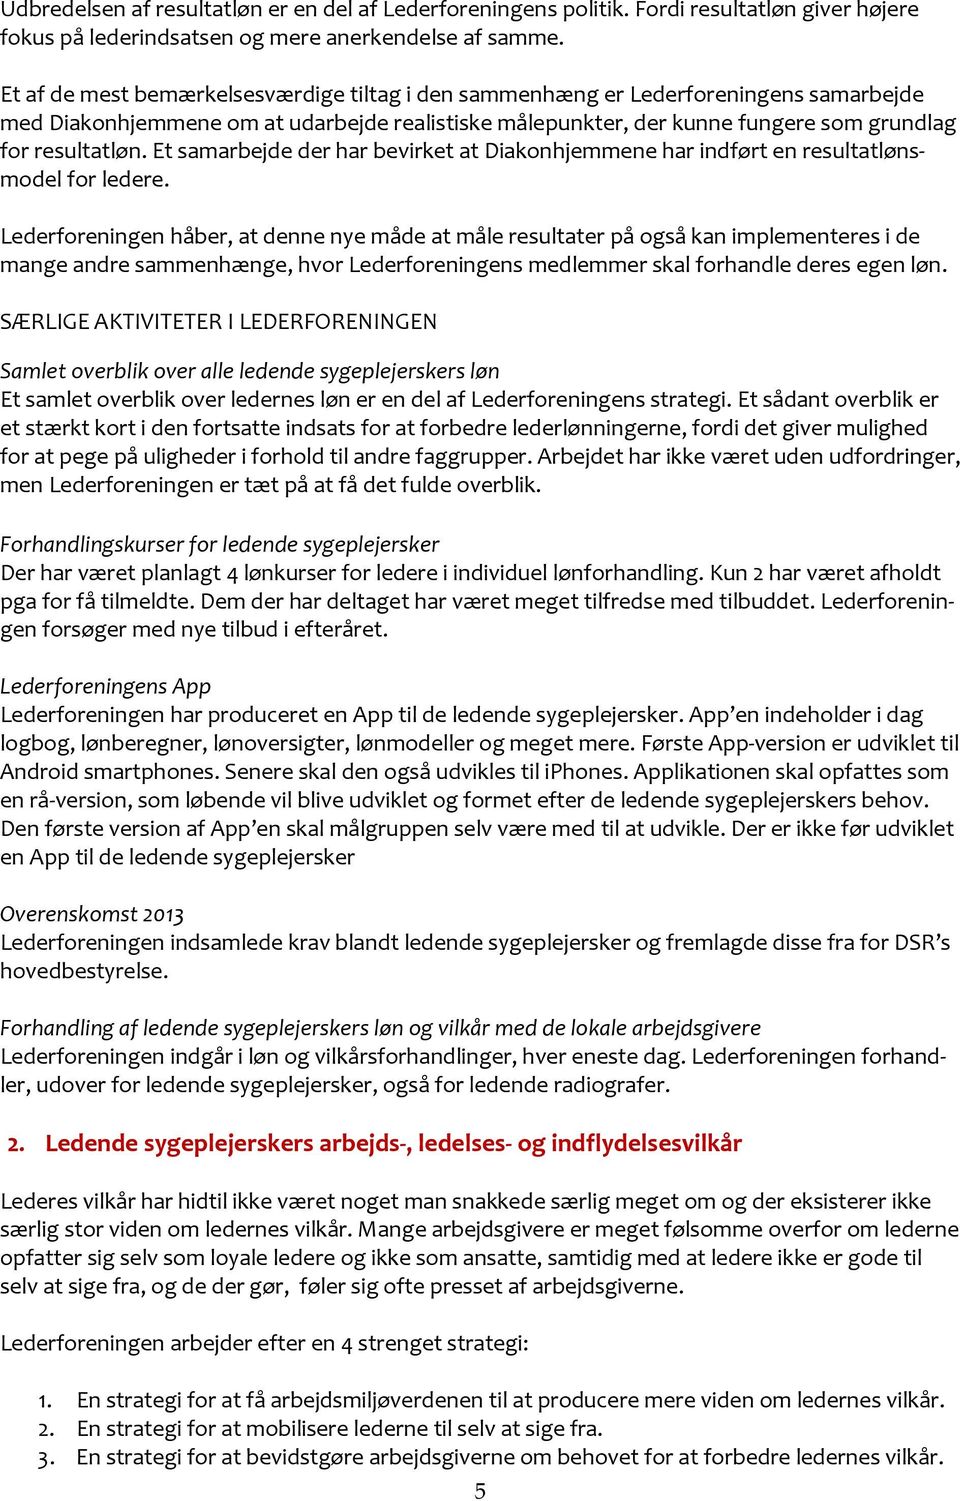 Den moderne fagforening med LEDERNE i centrum - PDF Gratis download